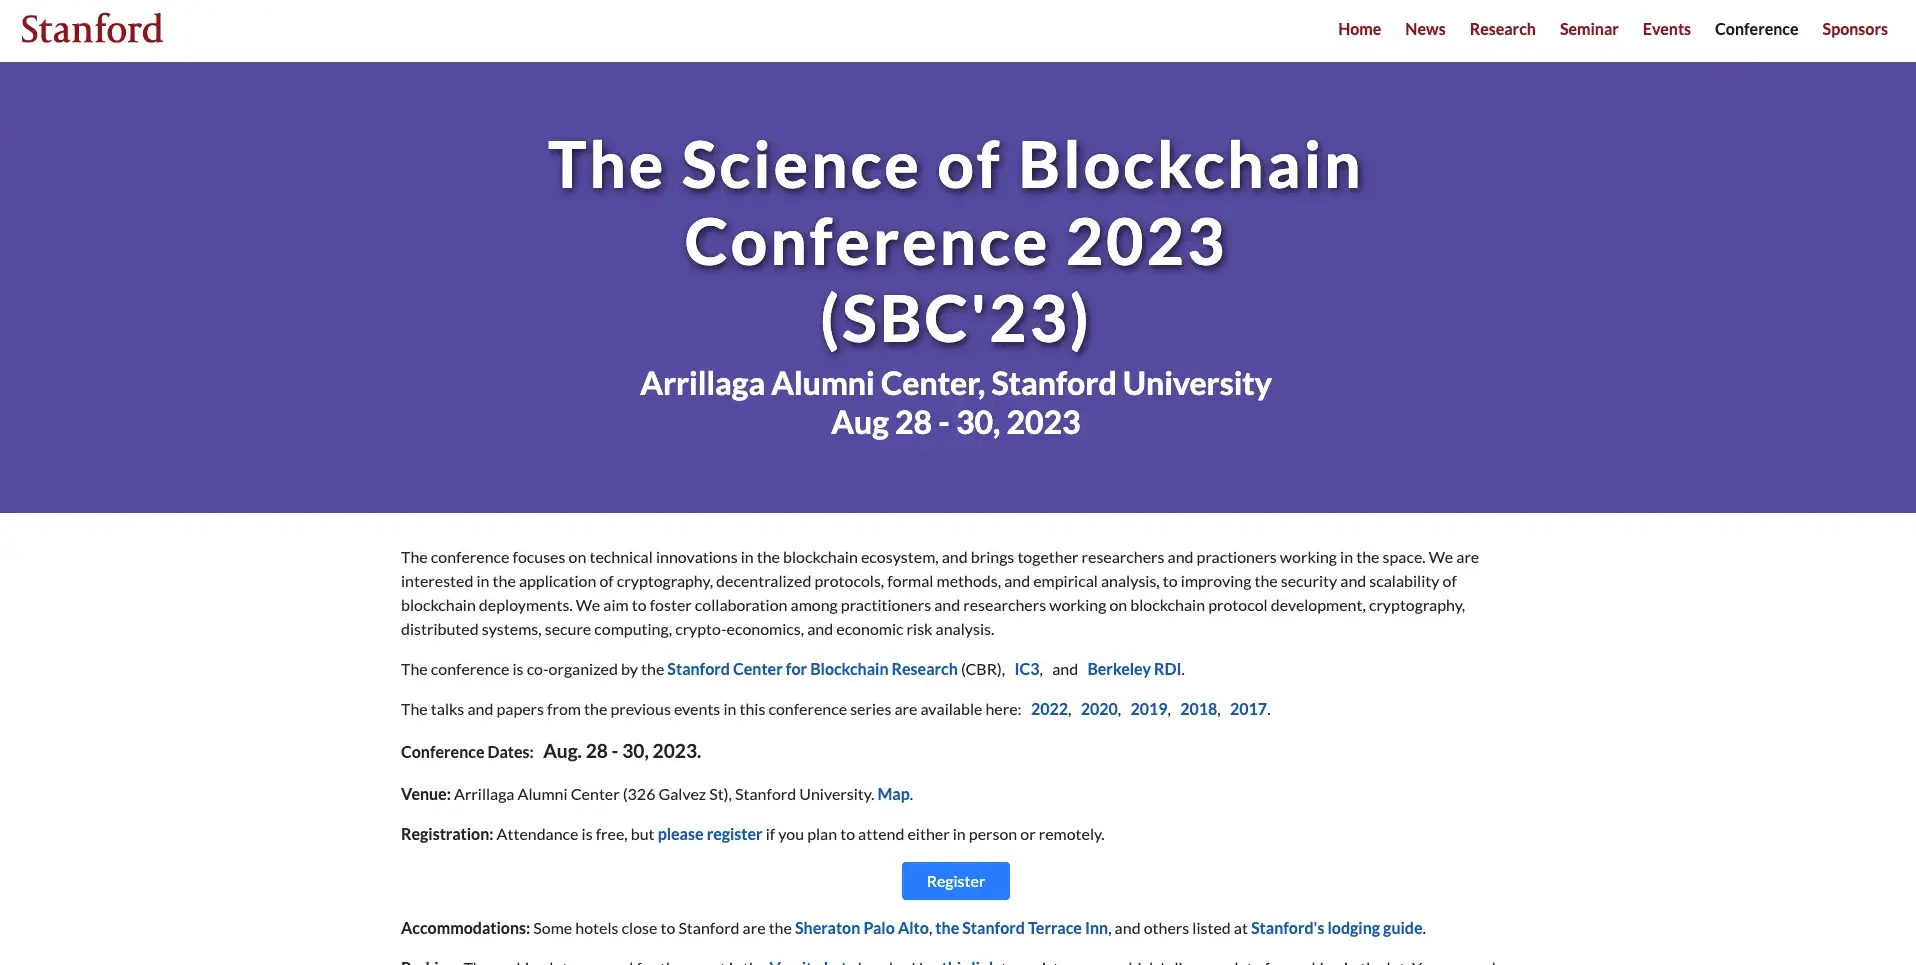 5. Conferencia sobre la ciencia de la cadena de bloques